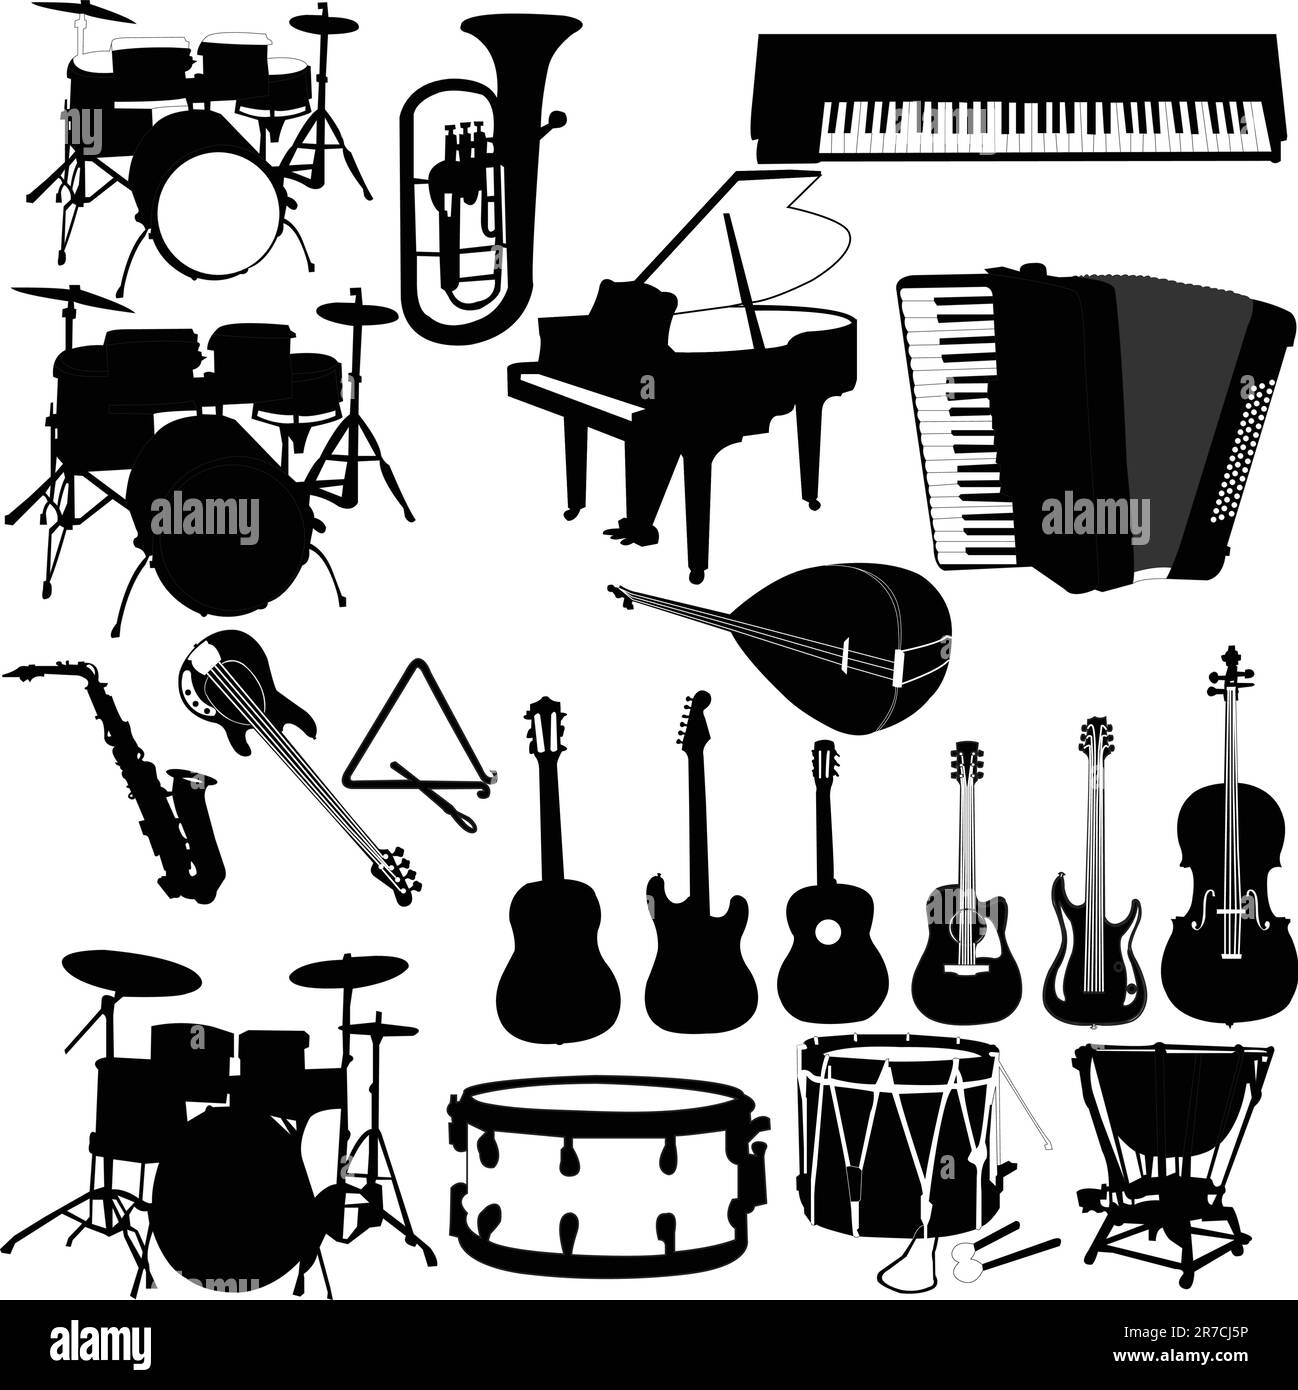 illustrazione dello strumento musicale - vettore Illustrazione Vettoriale